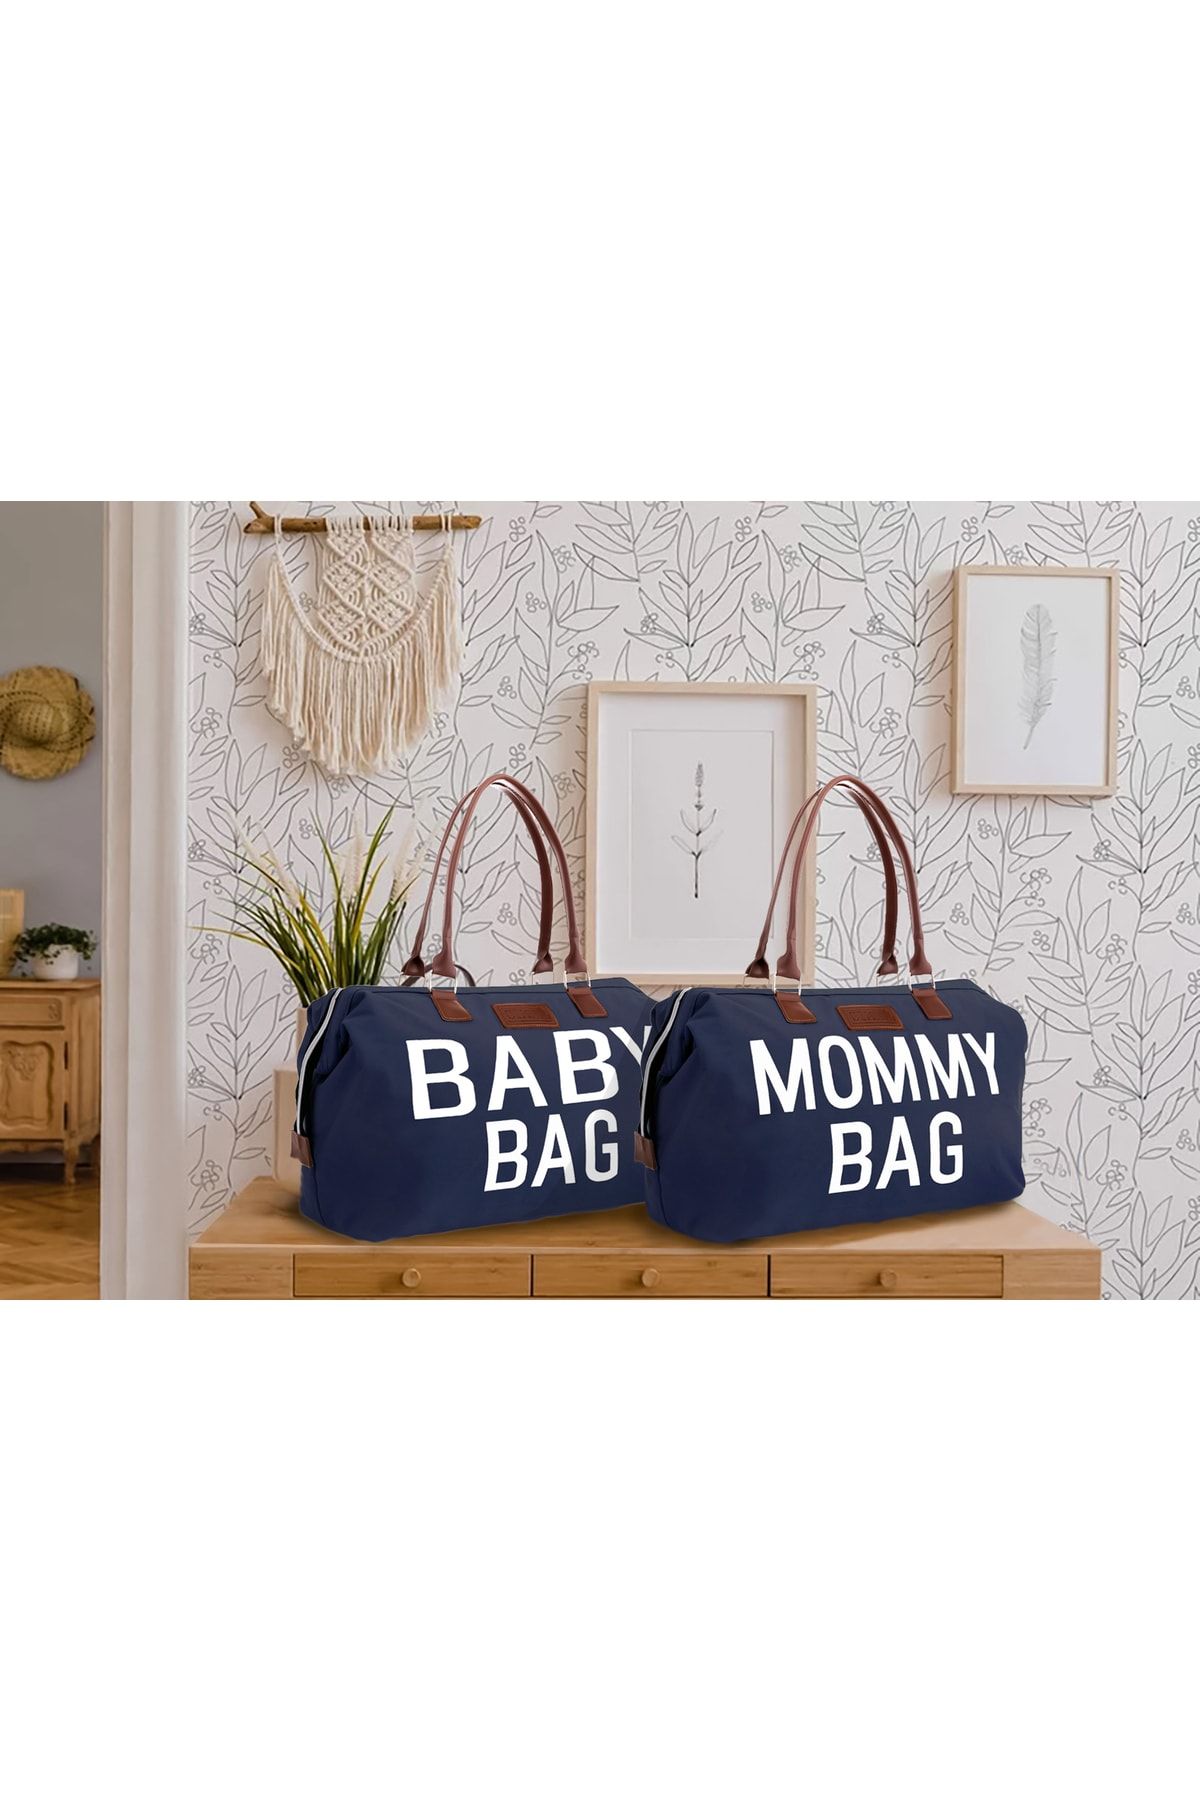 CHQEL Ikili Anne Ve Bebek Çanta Seti, Mommy Ve Baby Bag Ikili Set, Doğum, Hastane Ve Seyahat Çantası